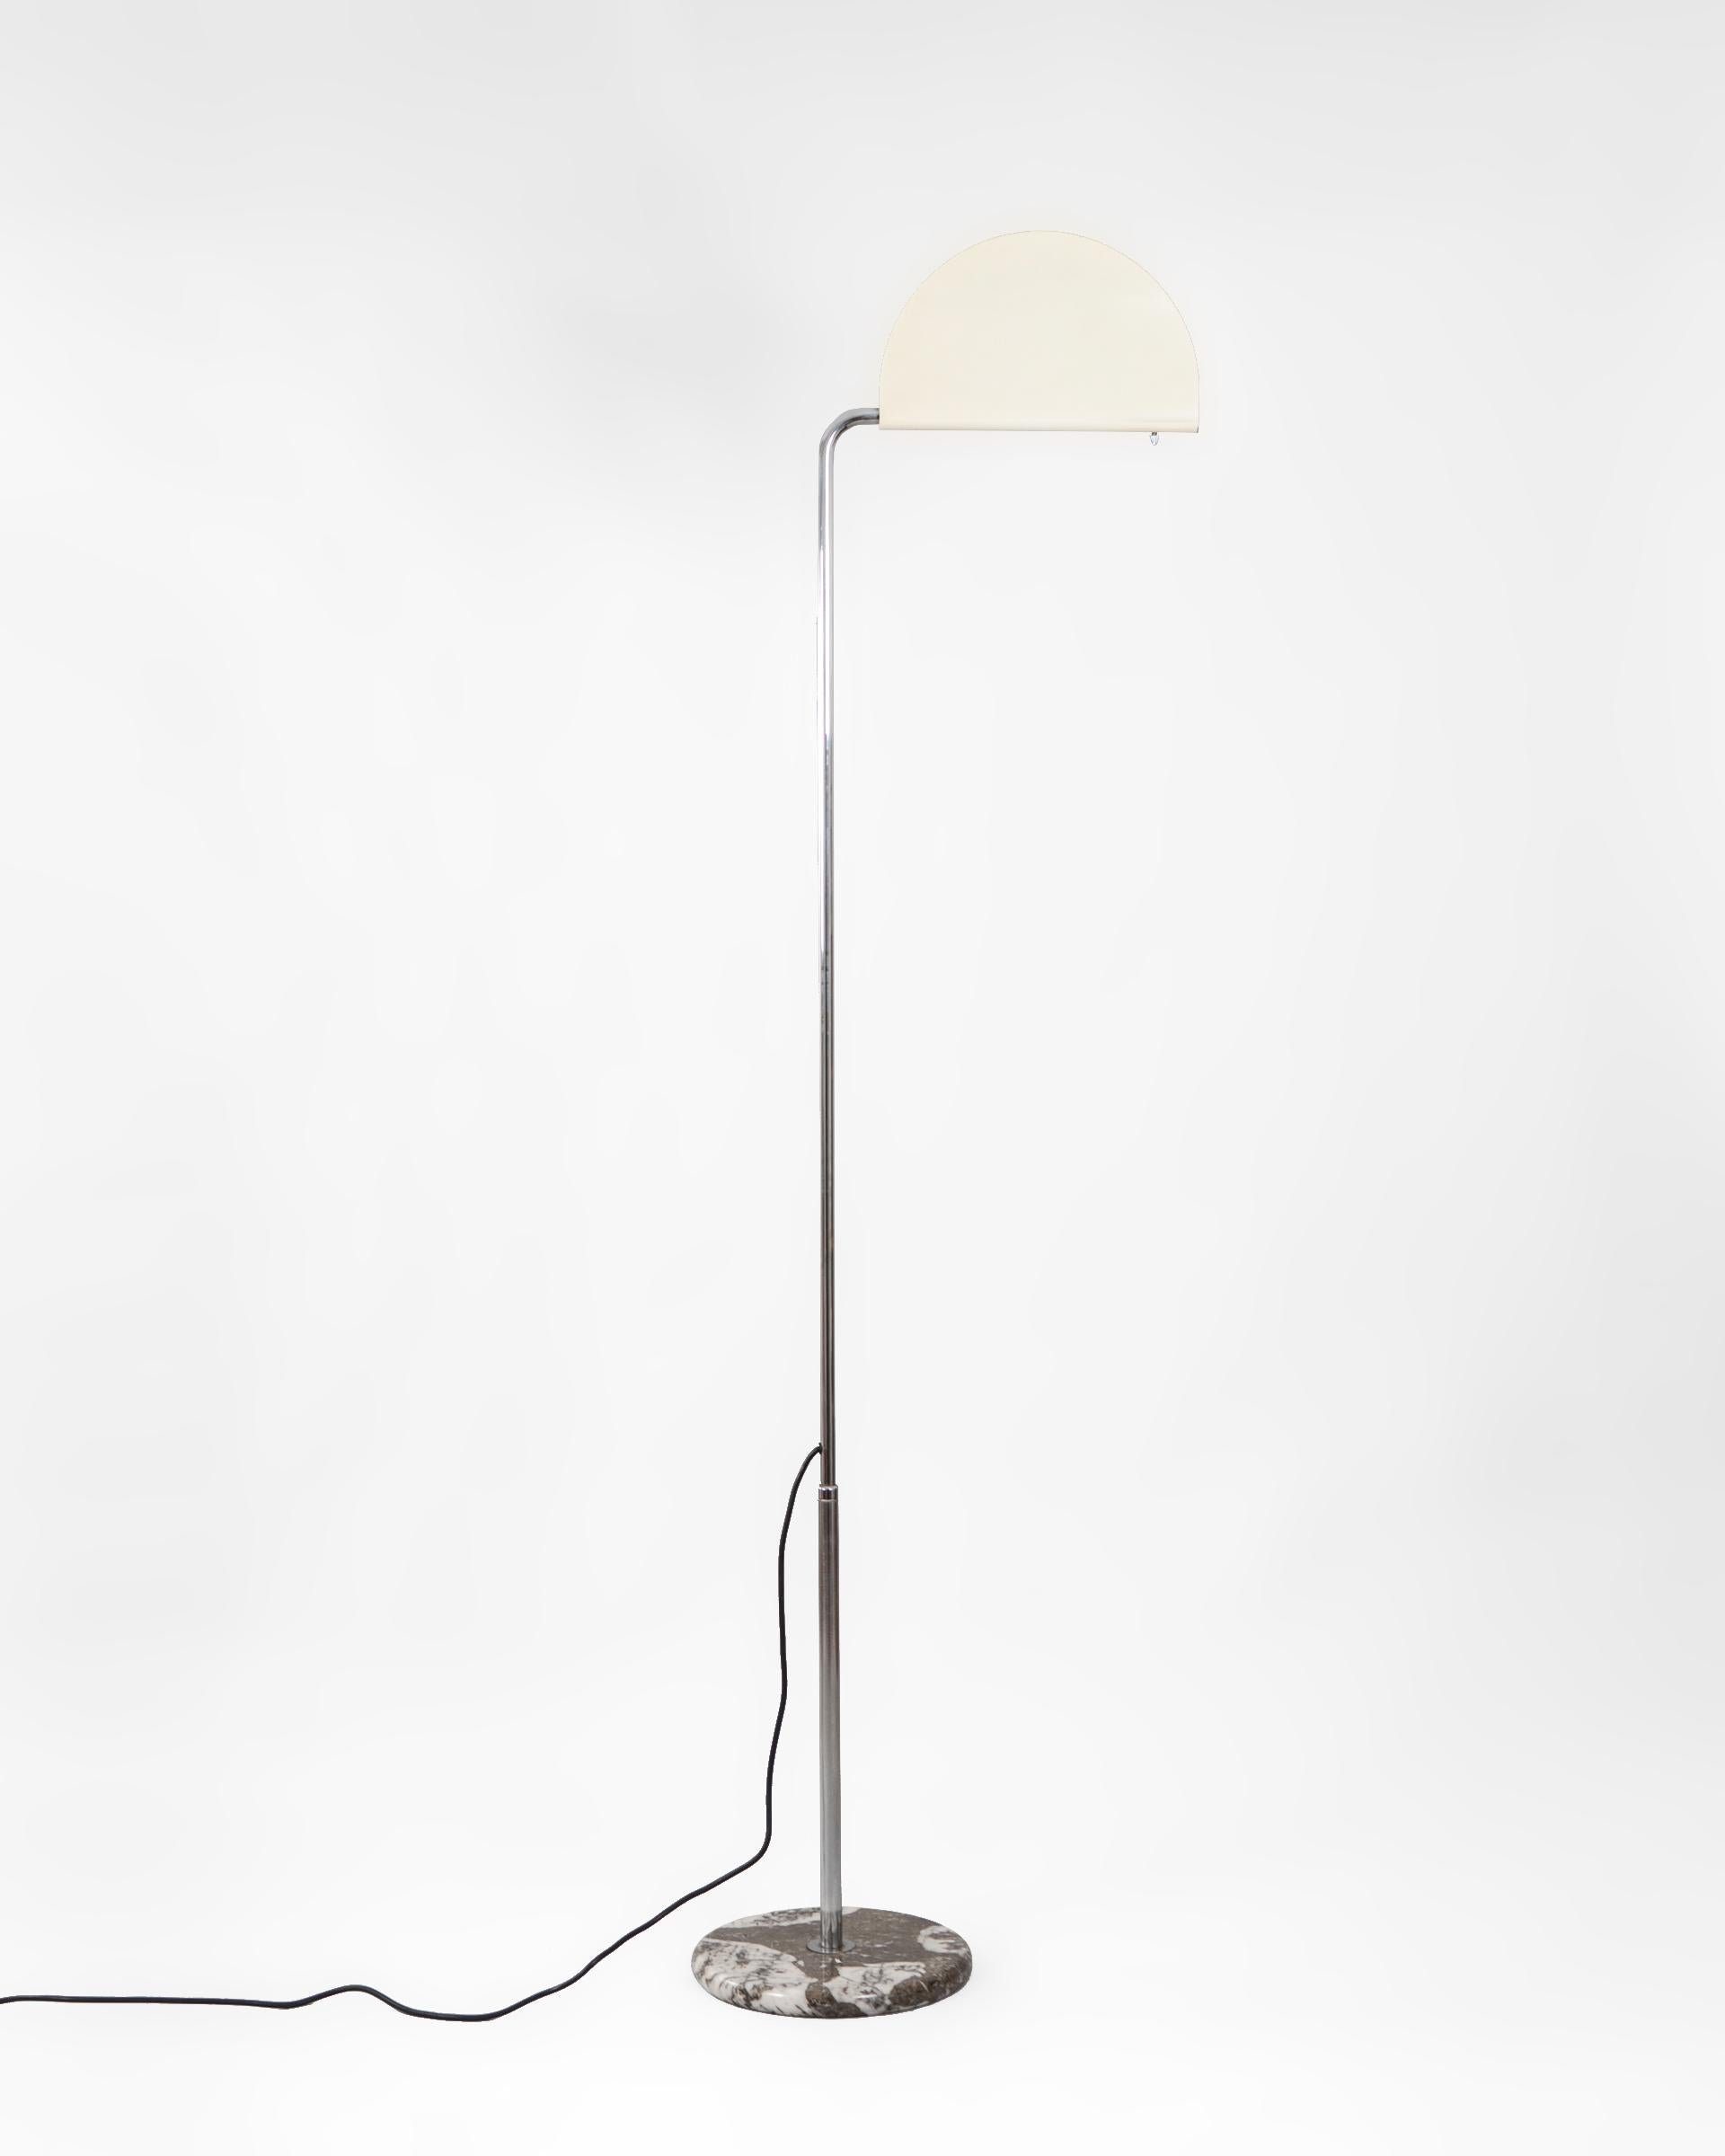 Lámpara de pie modelo Mezza Luna diseñada en 1974 por el italiano Bruno Gecchelin. Se produjo en los años posteriores por la firma Skipper and Pollux en Milán.

Das Design besteht aus einer Struktur aus verchromtem Stahlrohr, einem Sockel aus